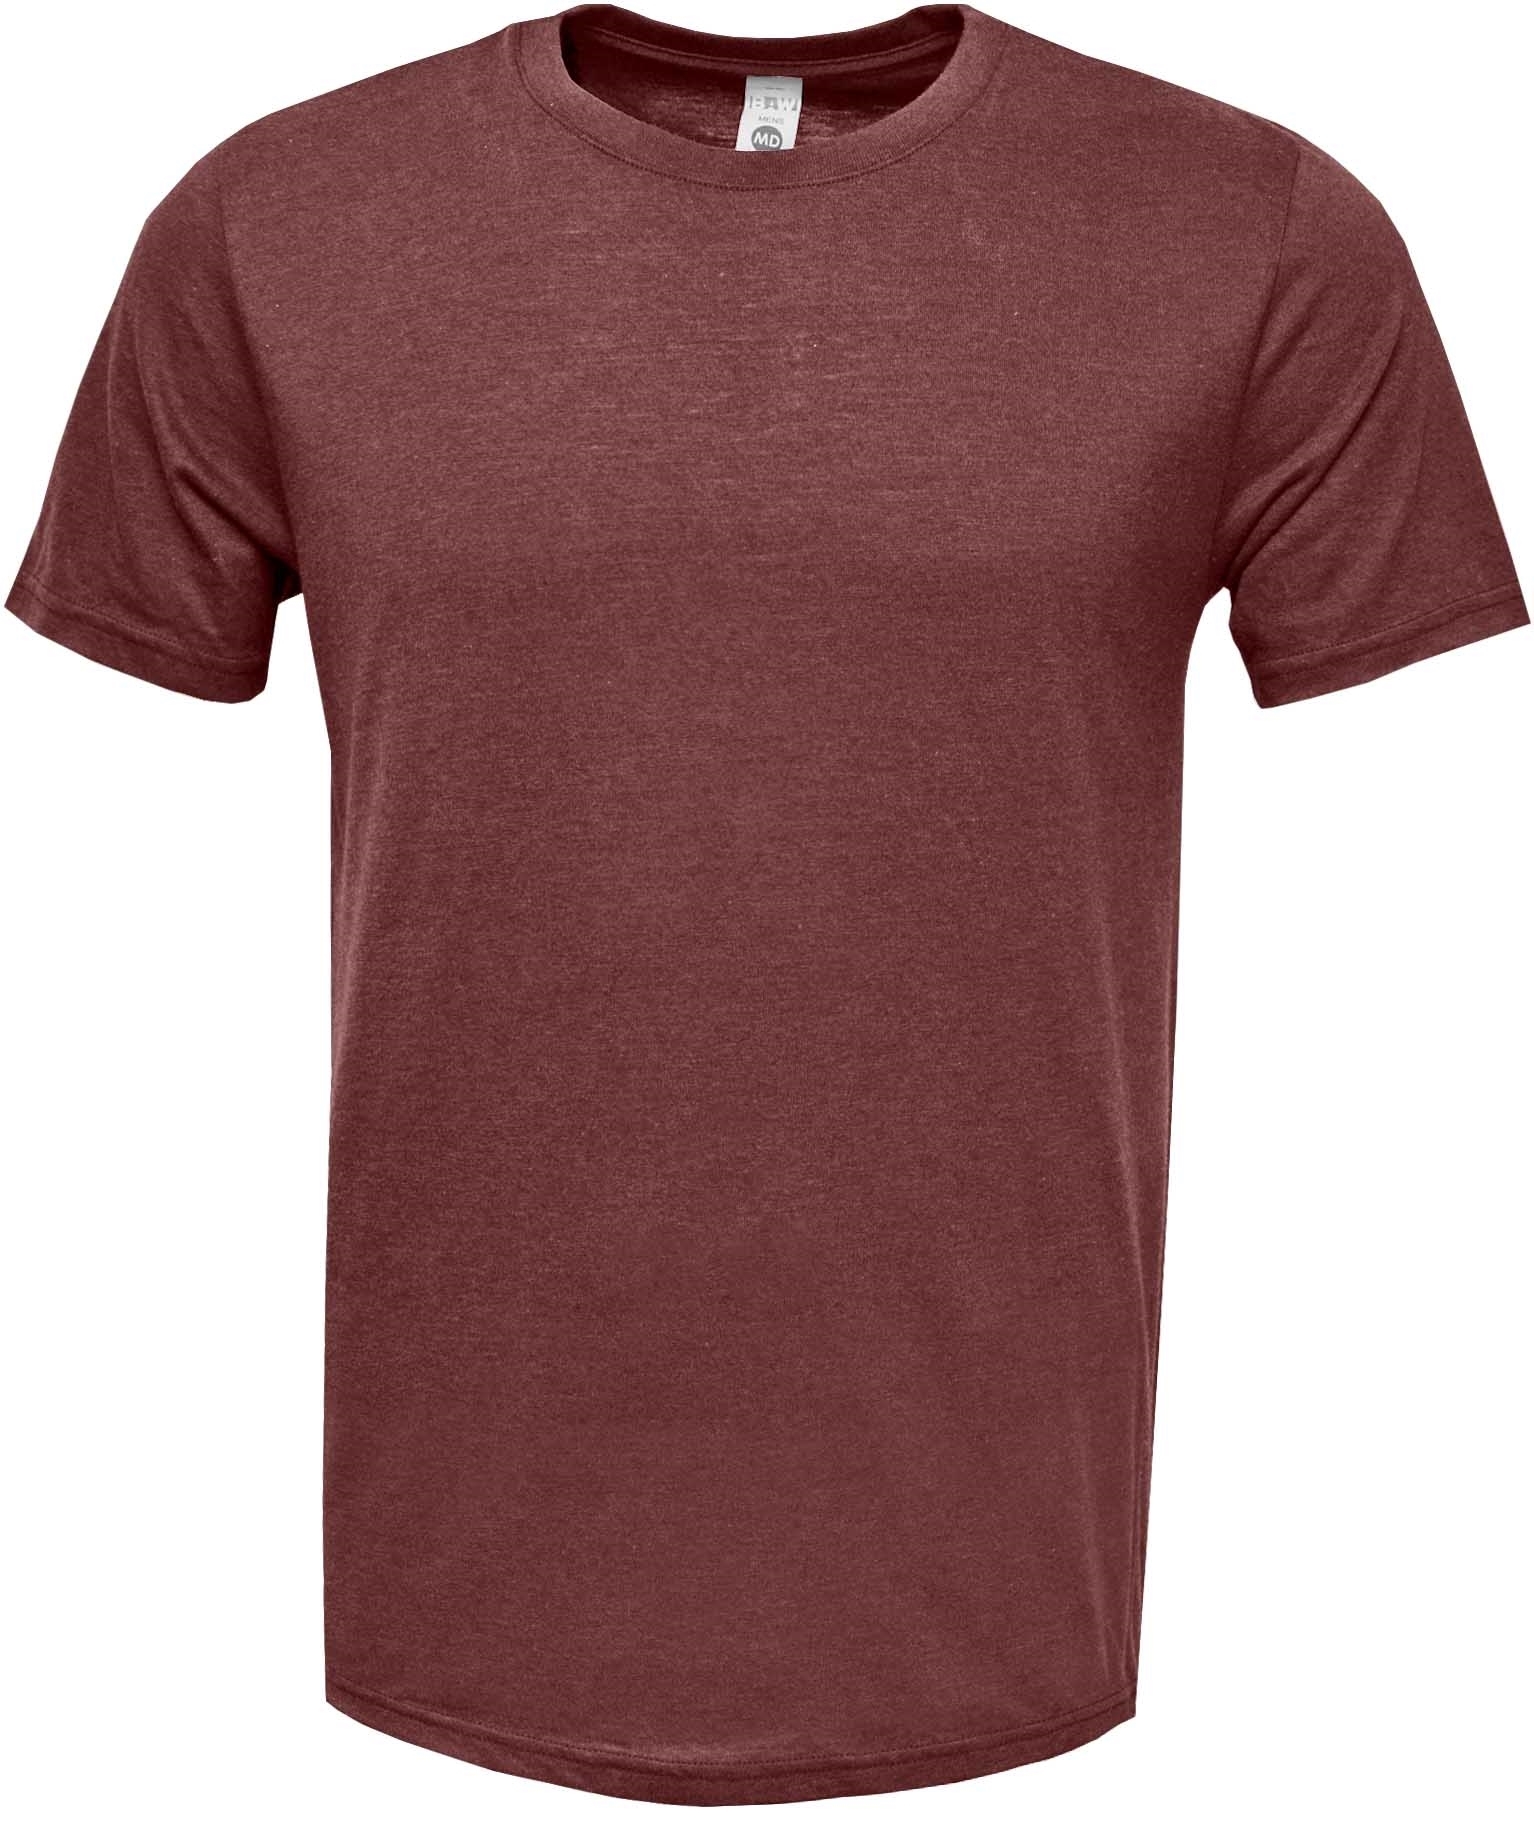 BAW Athletic Wear PC176Y - Youth Soft-Tek Blend T-Shirt